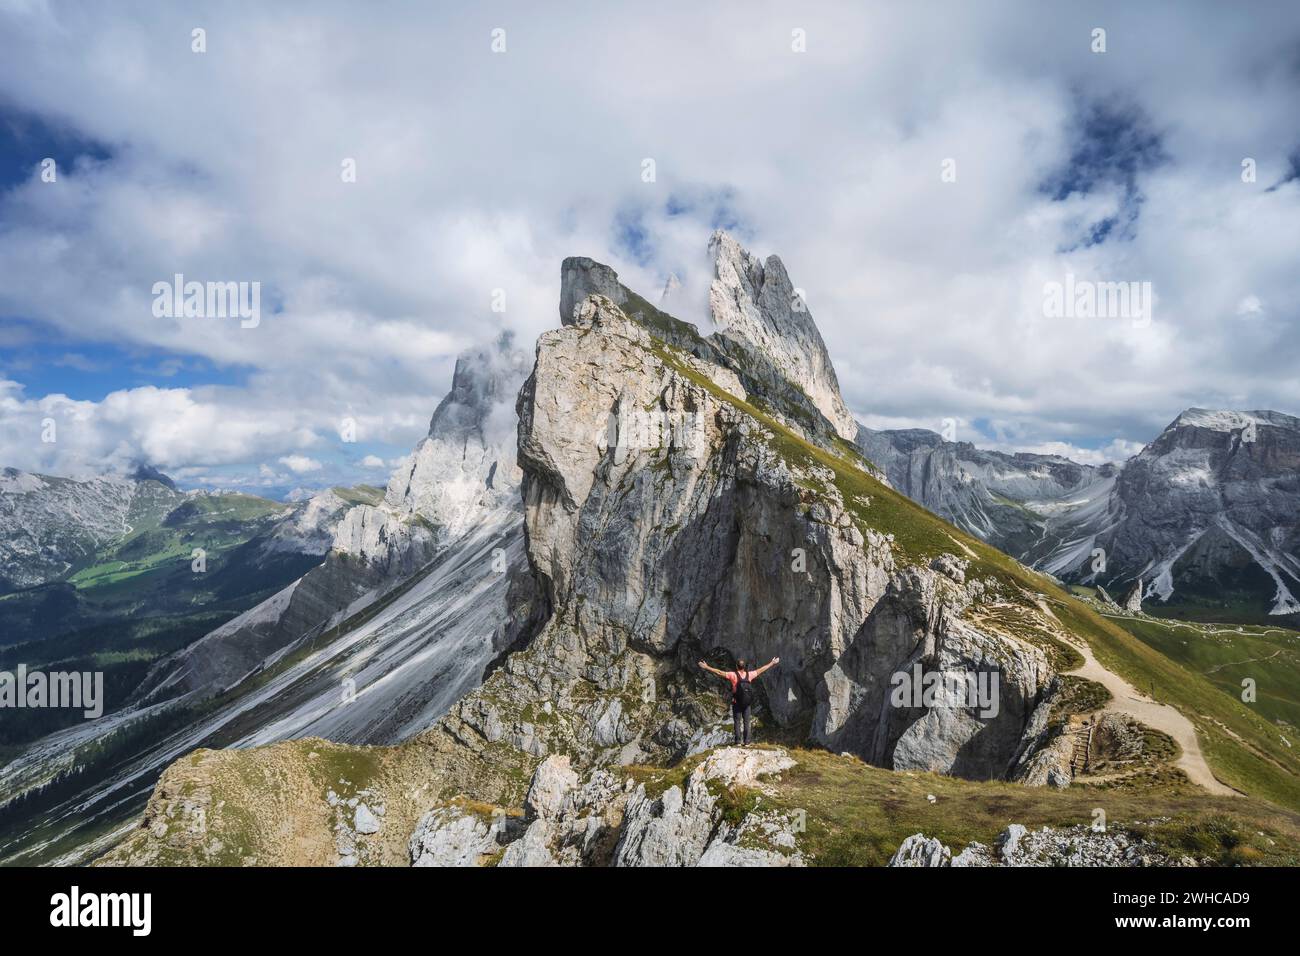 Un homme levant les mains devant les sommets épiques de Furchetta et Sass Rigais à Seceda, dans les Alpes Dolomites, dans la chaîne de montagnes Odle, Tyrol du Sud, Italie, Europe. Concept de vacances de voyage. Banque D'Images